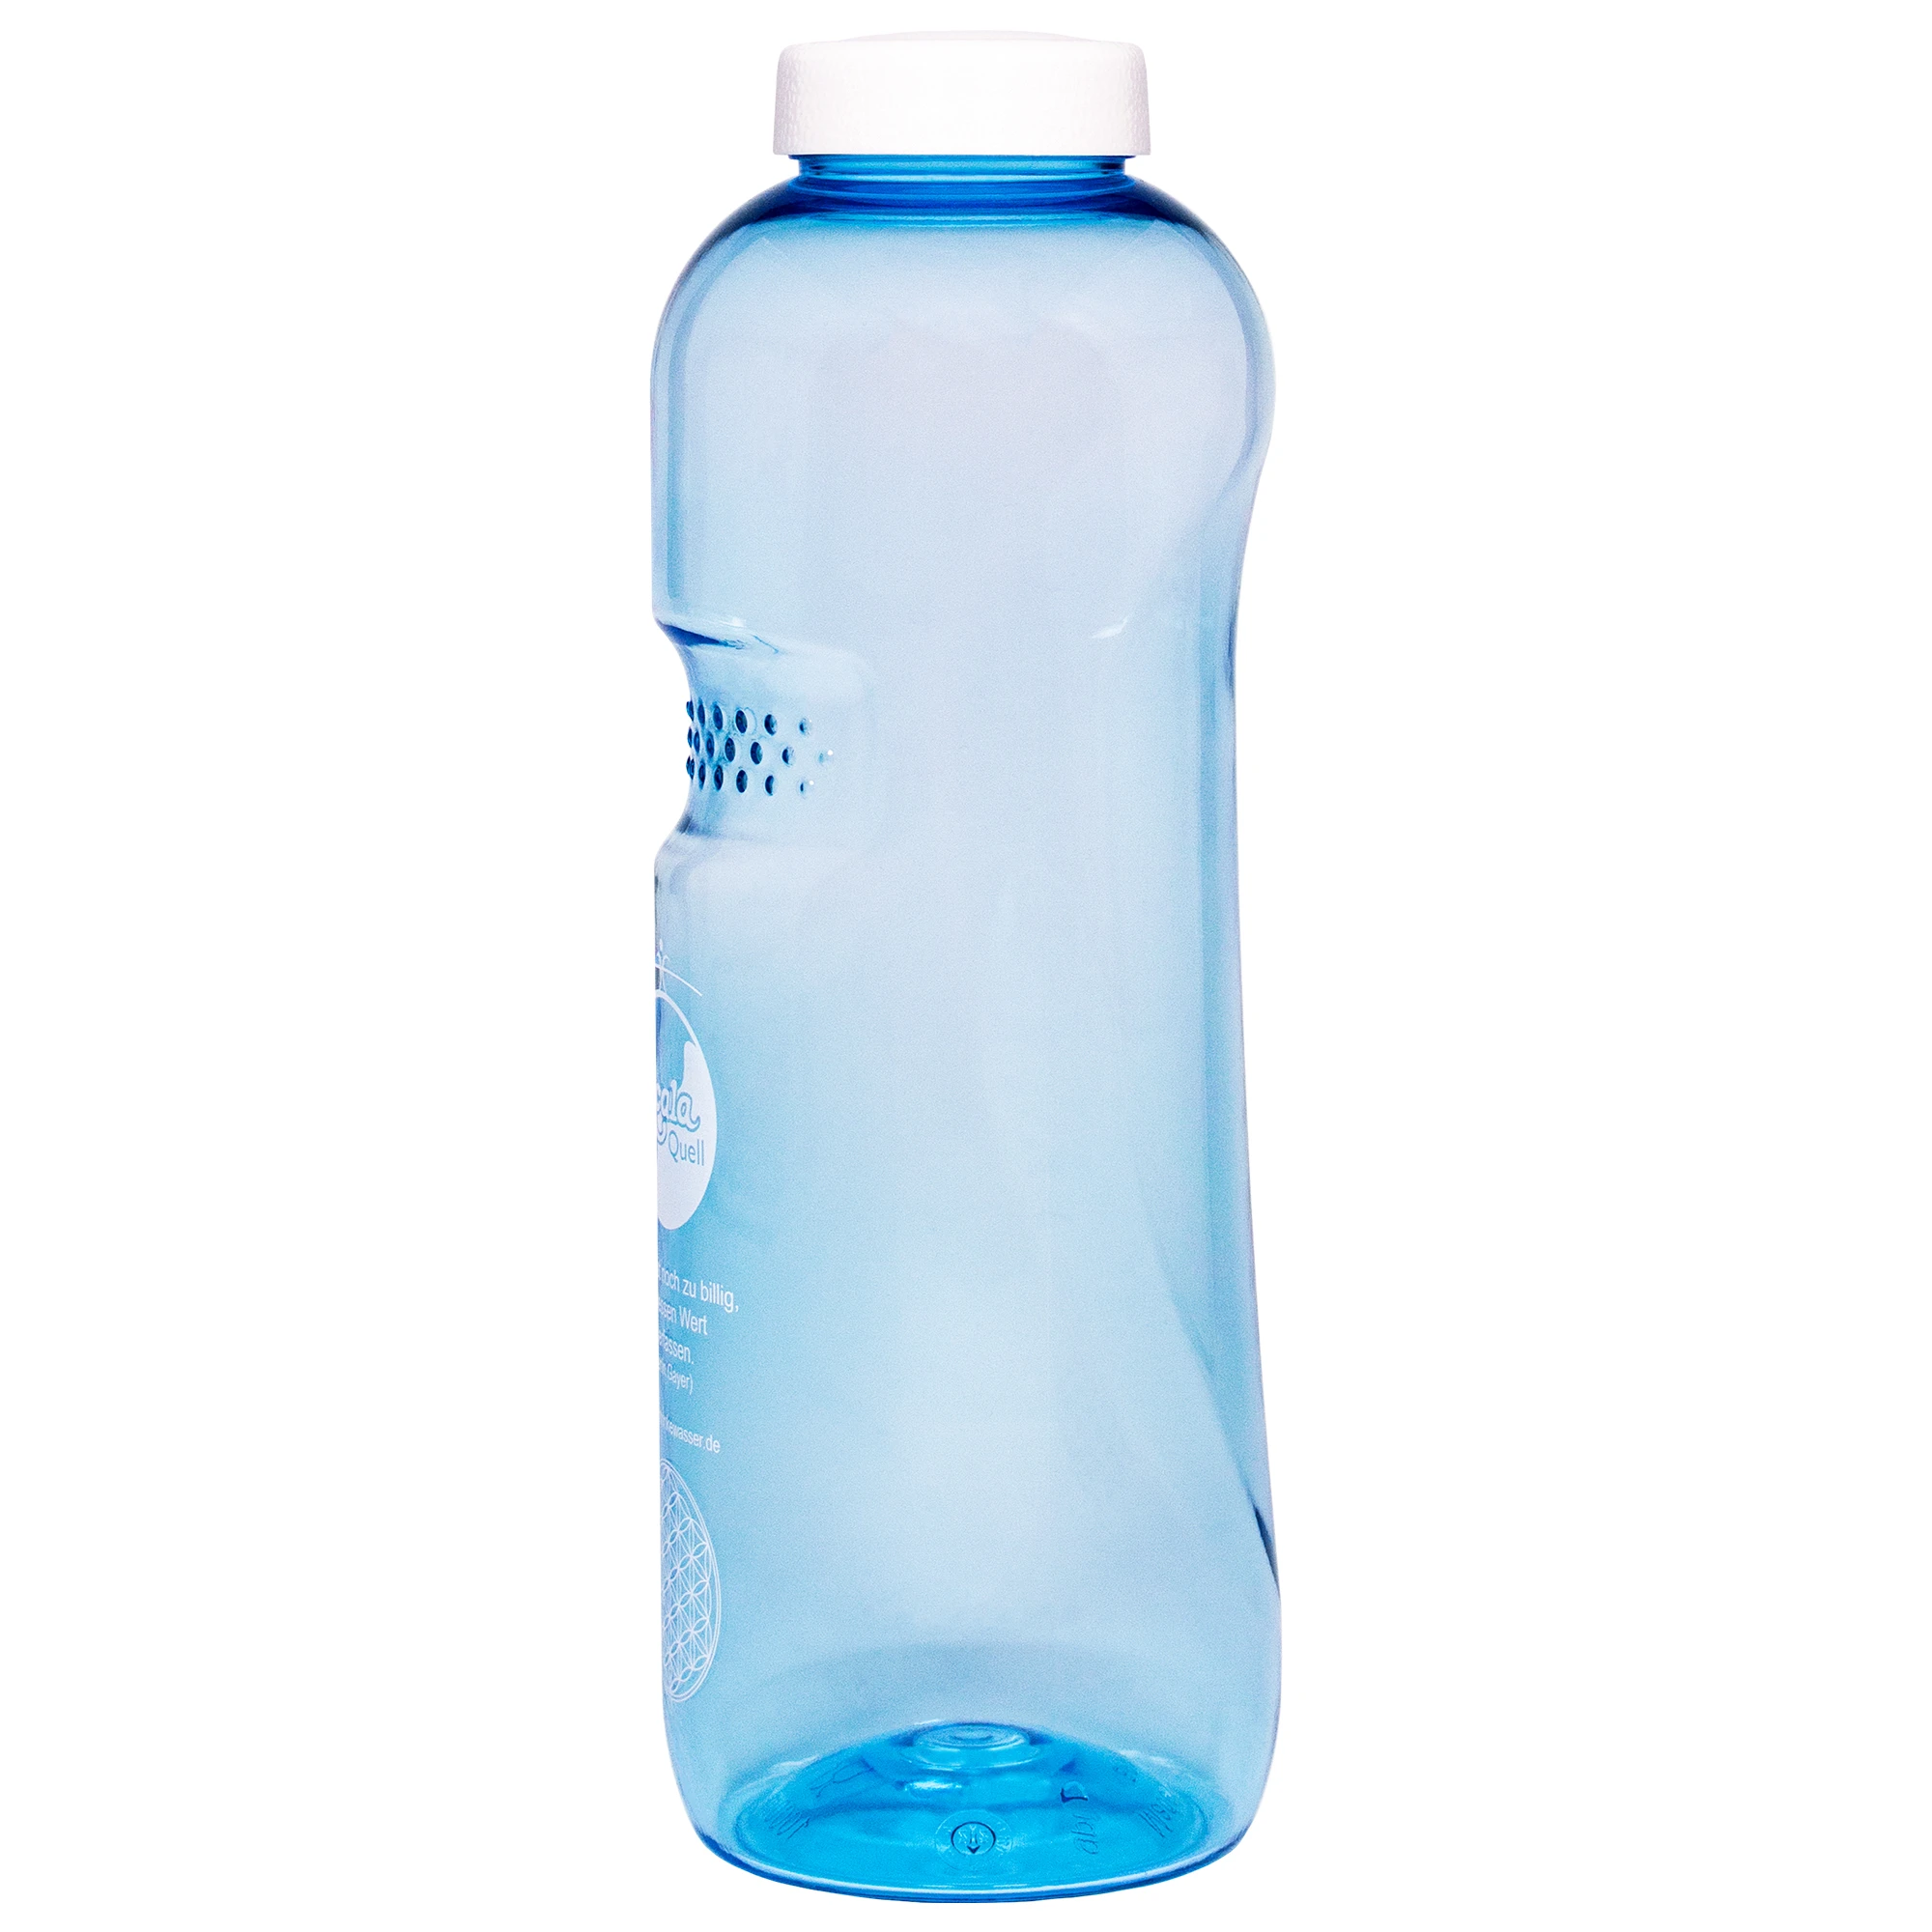 Zu sehen ist eine blaue Tritan Trinkflasche Grip mit weißem Schraubdeckel vor weißem Hintergrund. Man schaut schräg auf die Rückseite der Flasche und sieht dass sie vorne eine Einbuchtung mit Noppen für den Daumen hat.